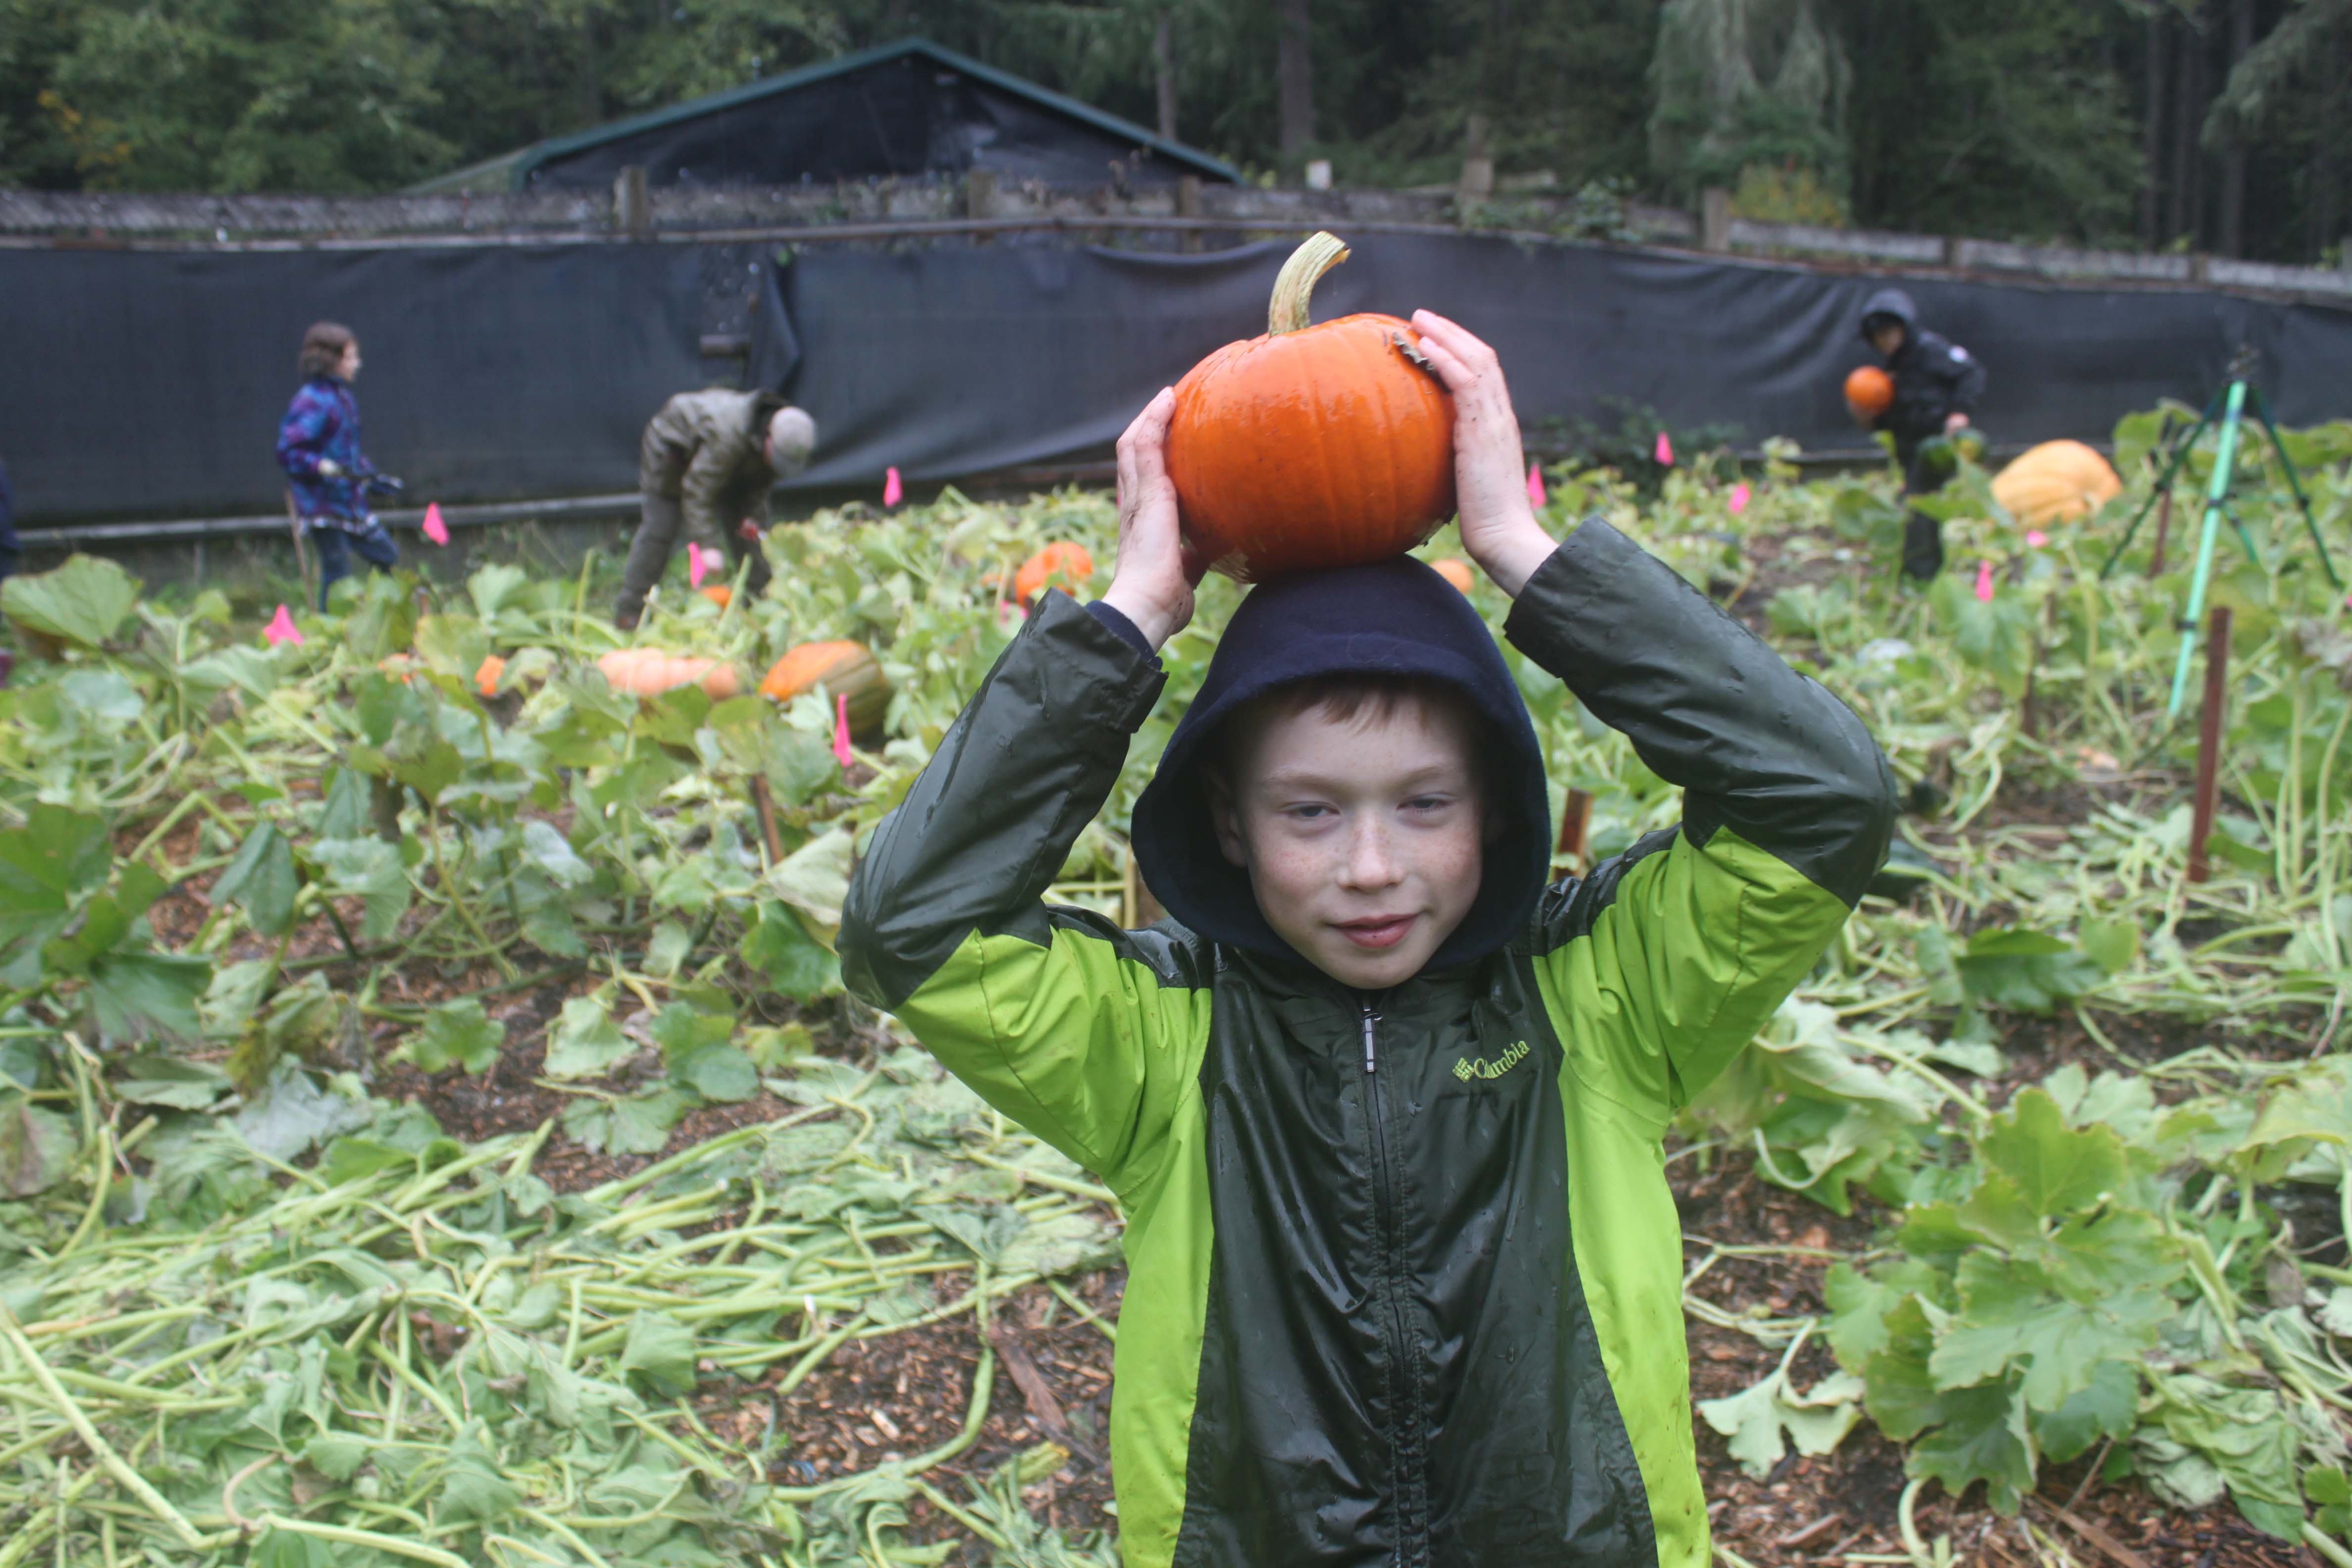 Weyerhaeuser student Blake Pool has fun harvesting pumpkins he helped grow at Northwest Trek with his class.